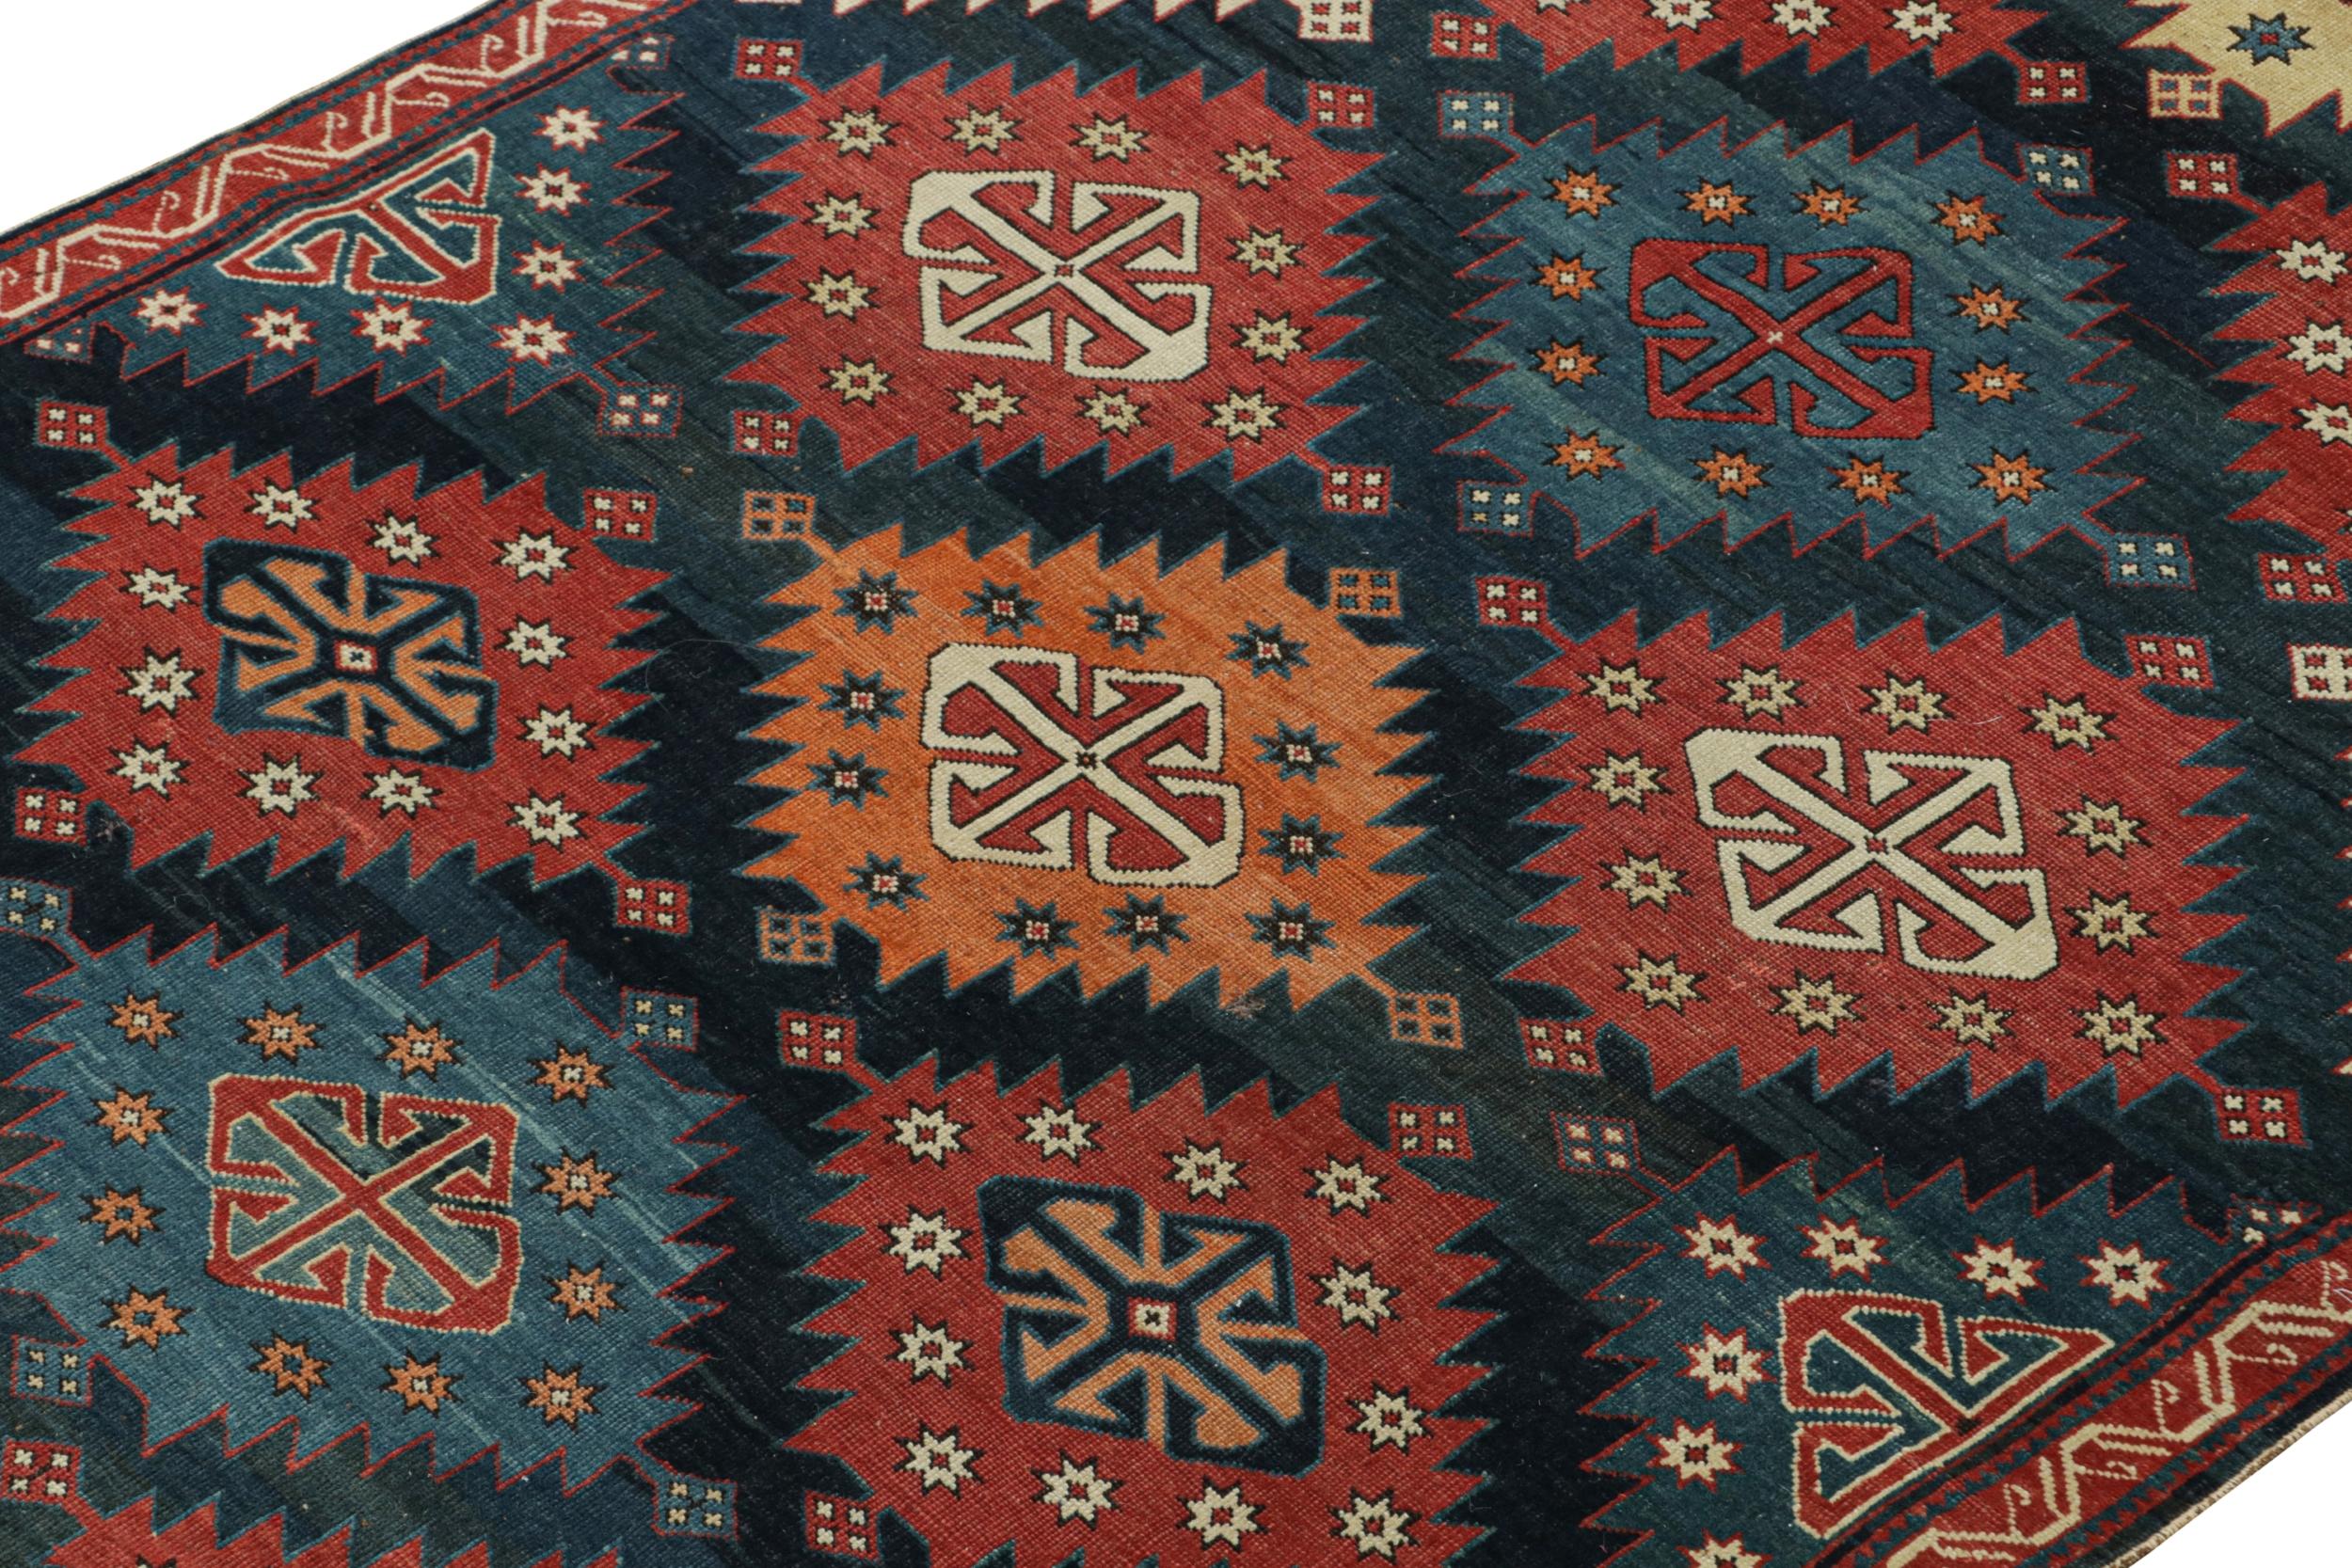 Ce tapis antique CIRCA 4x5 est probablement une pièce Kazak rare, nouée à la main en laine vers 1910-1920. 

Sur le Design : 

Les connaisseurs noteront que les tapis kazakhs comme celui-ci sont largement considérés comme l'un des tapis tribaux